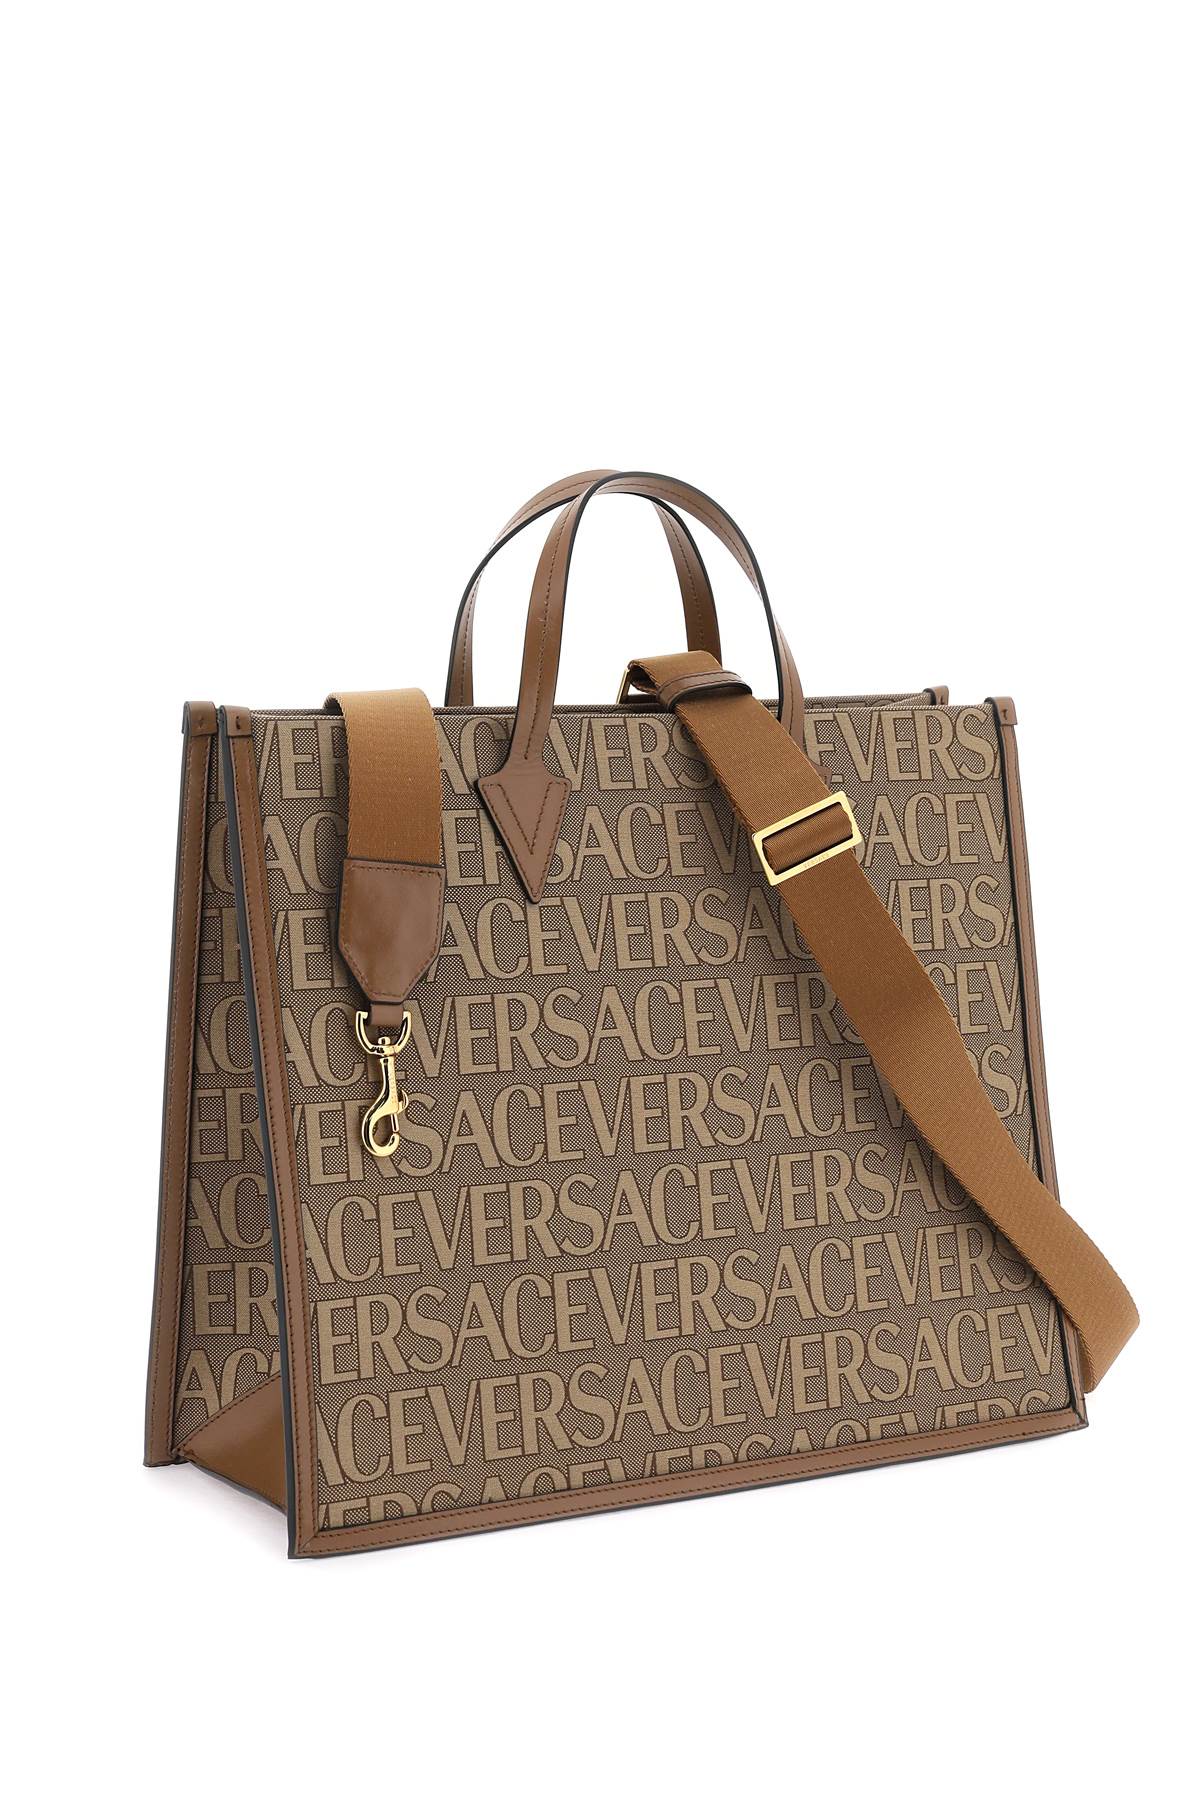 Versace versace allover shopper bag-2